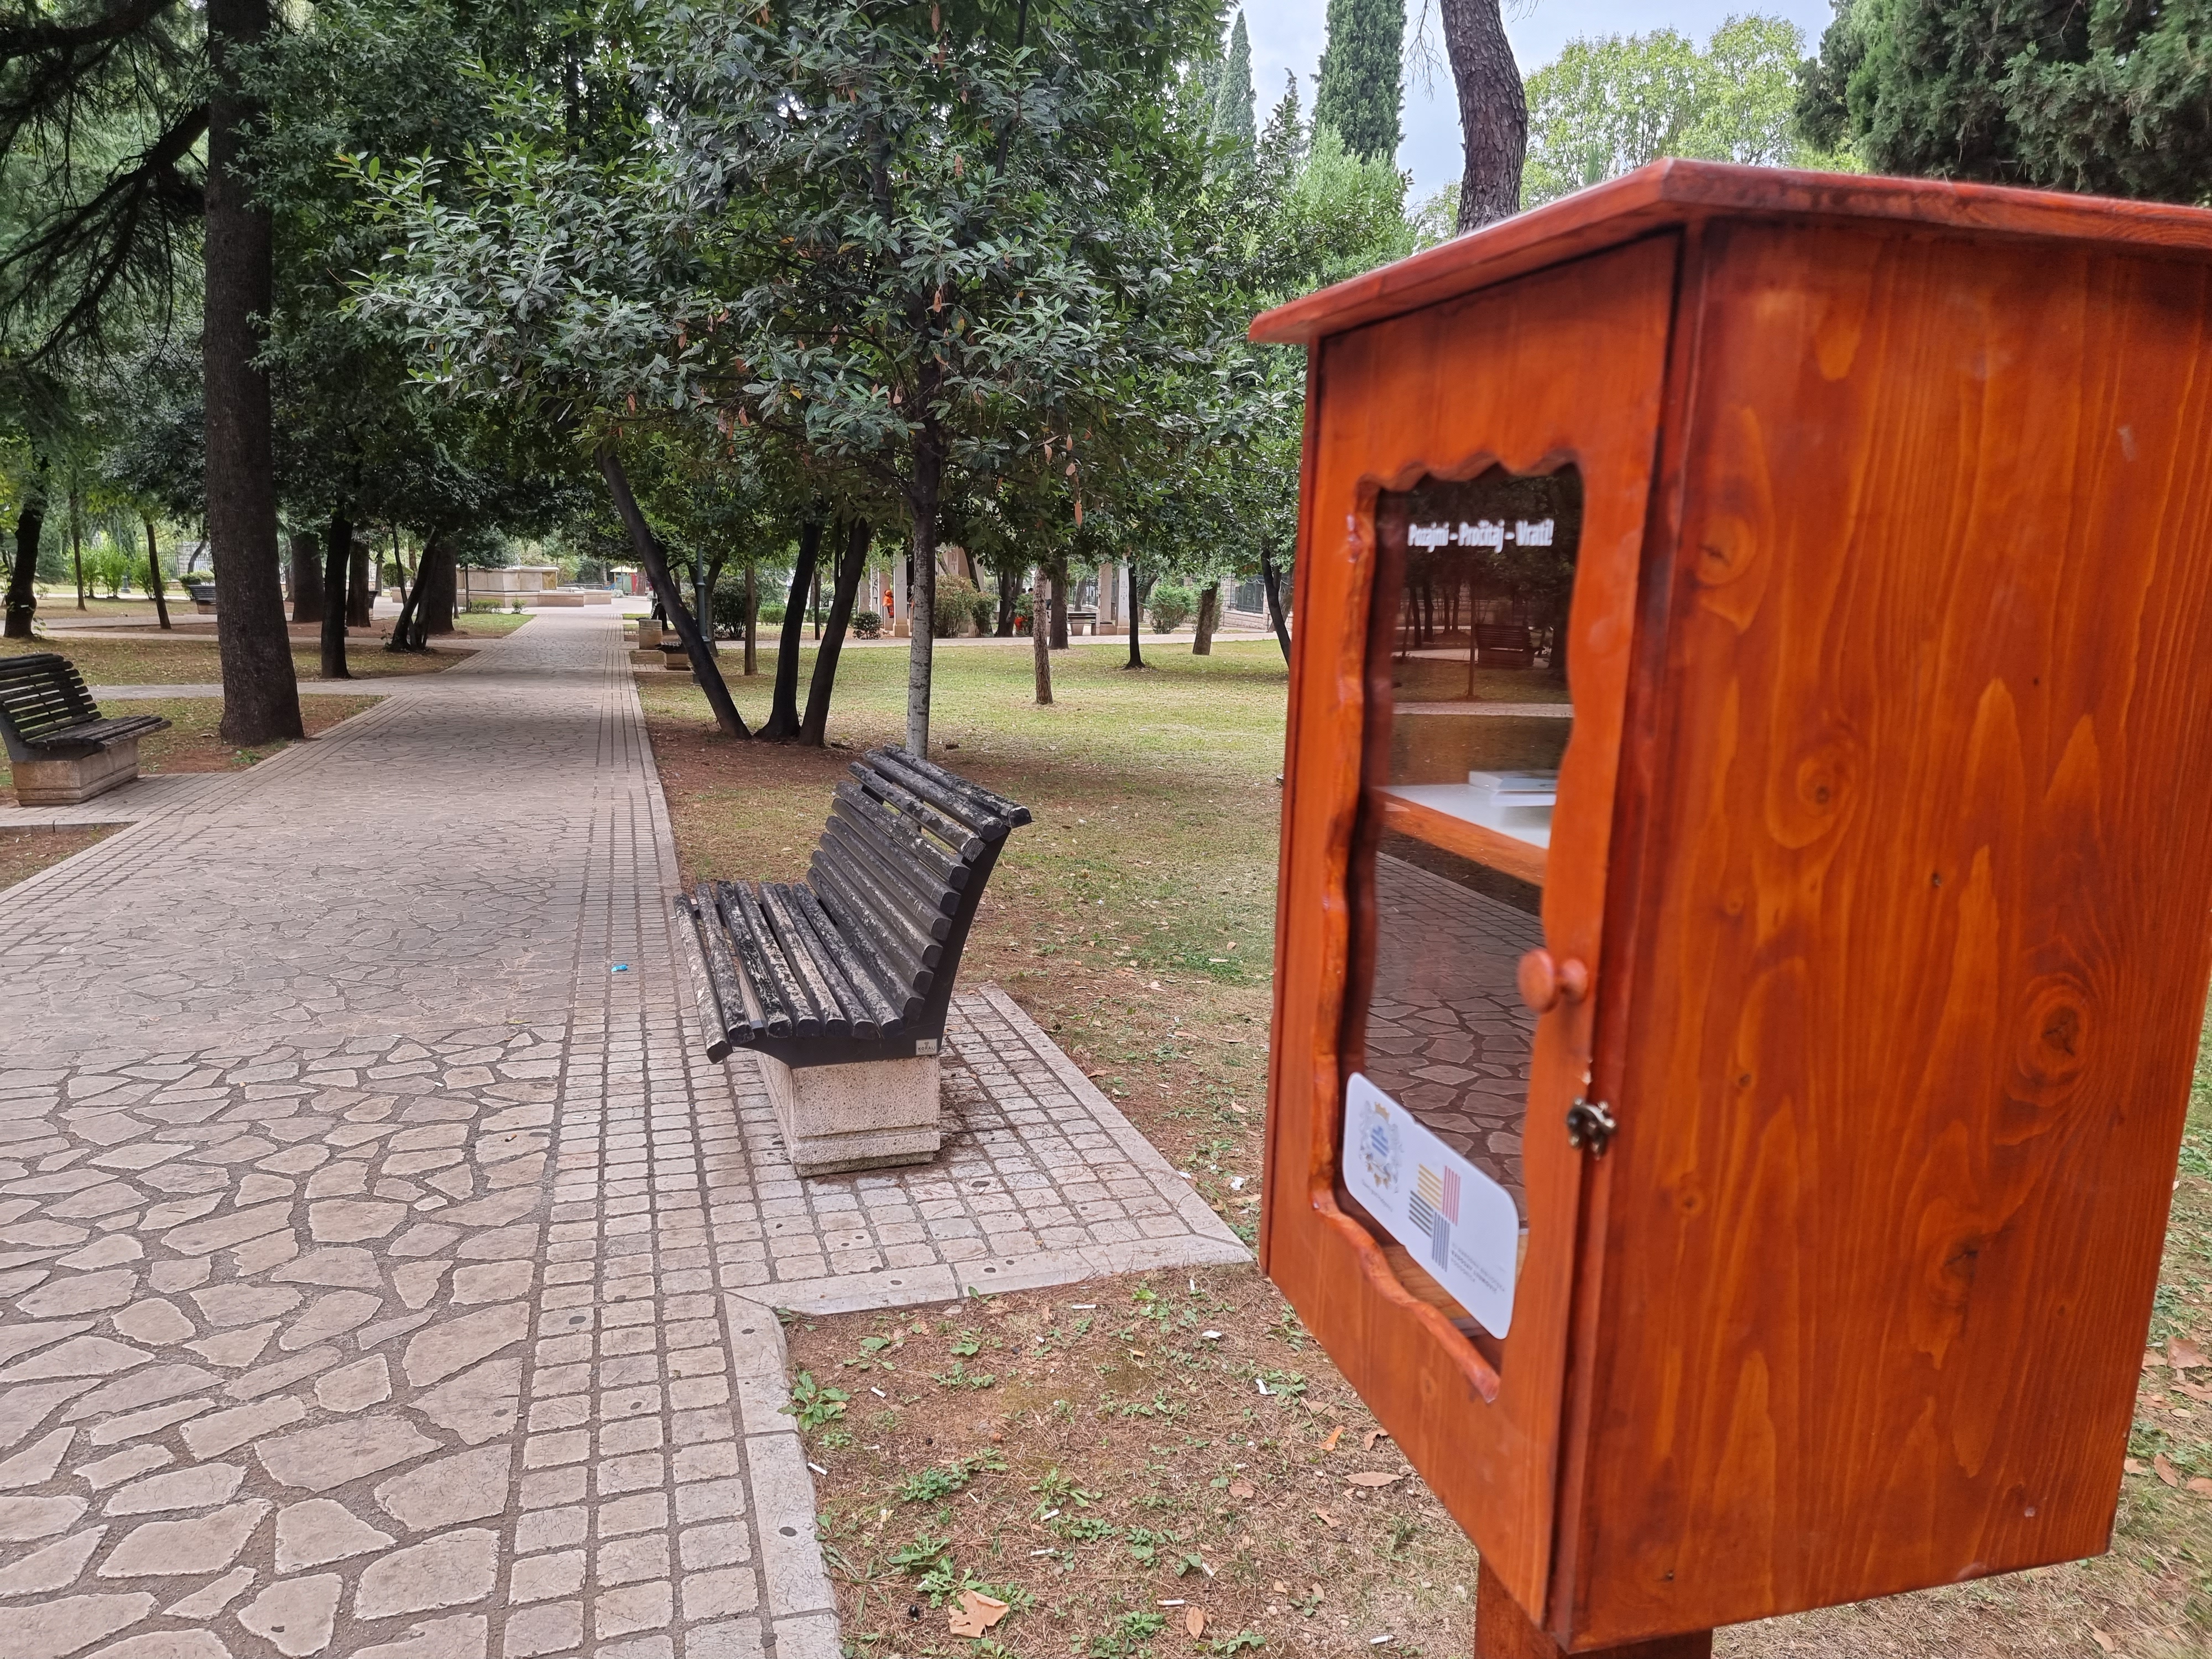 Pozajmi-Pročitaj-Vrati; Postavljene mini biblioteke u podgoričkim parkovima